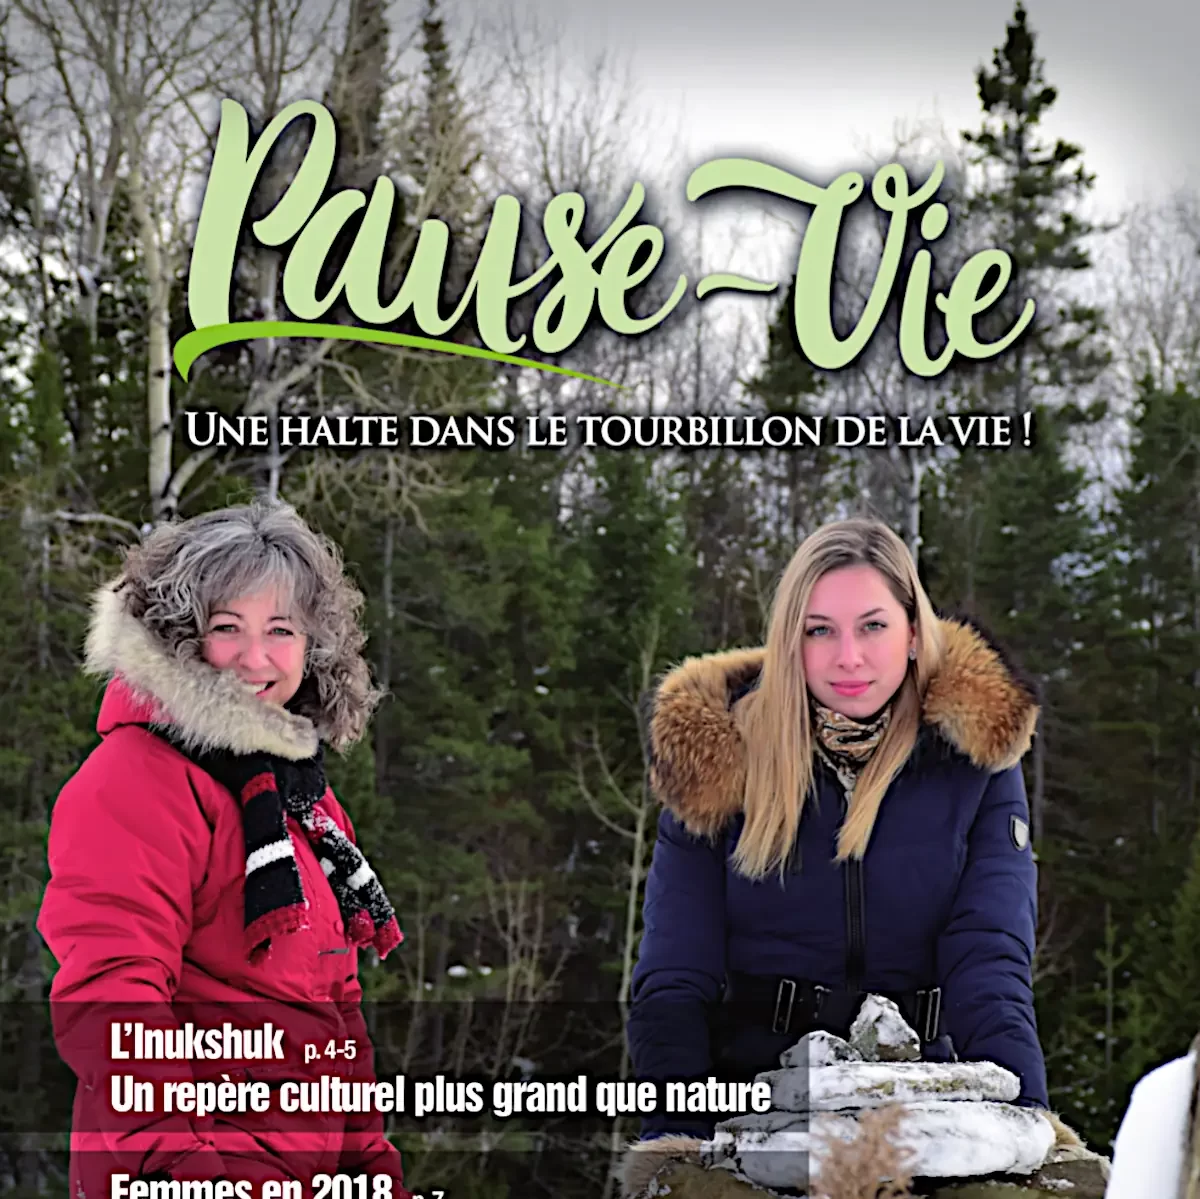 Couverture du magazine Pause-Vie (février 2018).